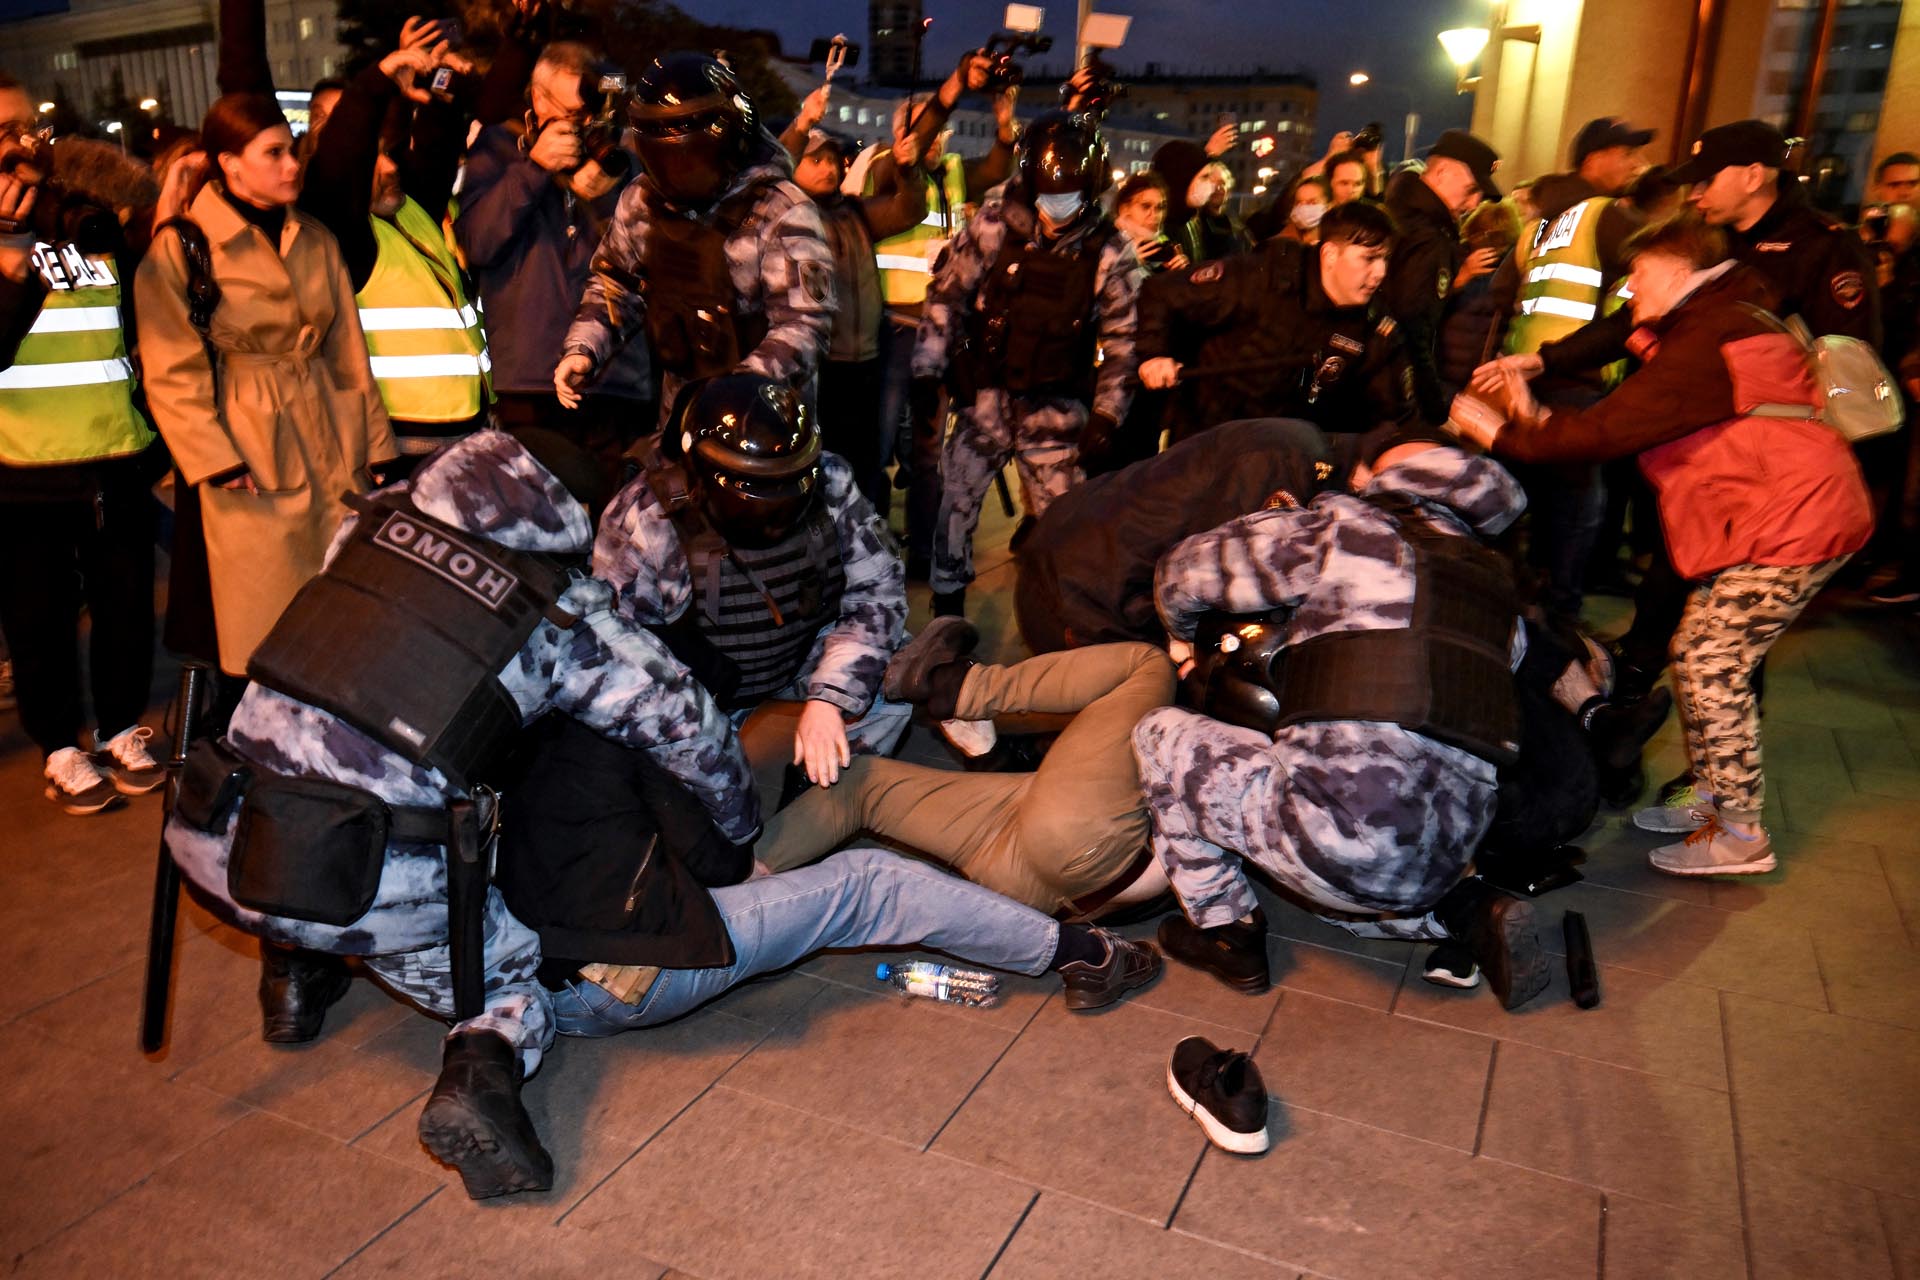 Nel centro di Mosca, la polizia antisommossa ha iniziato gli arresti non appena è iniziata la protesta